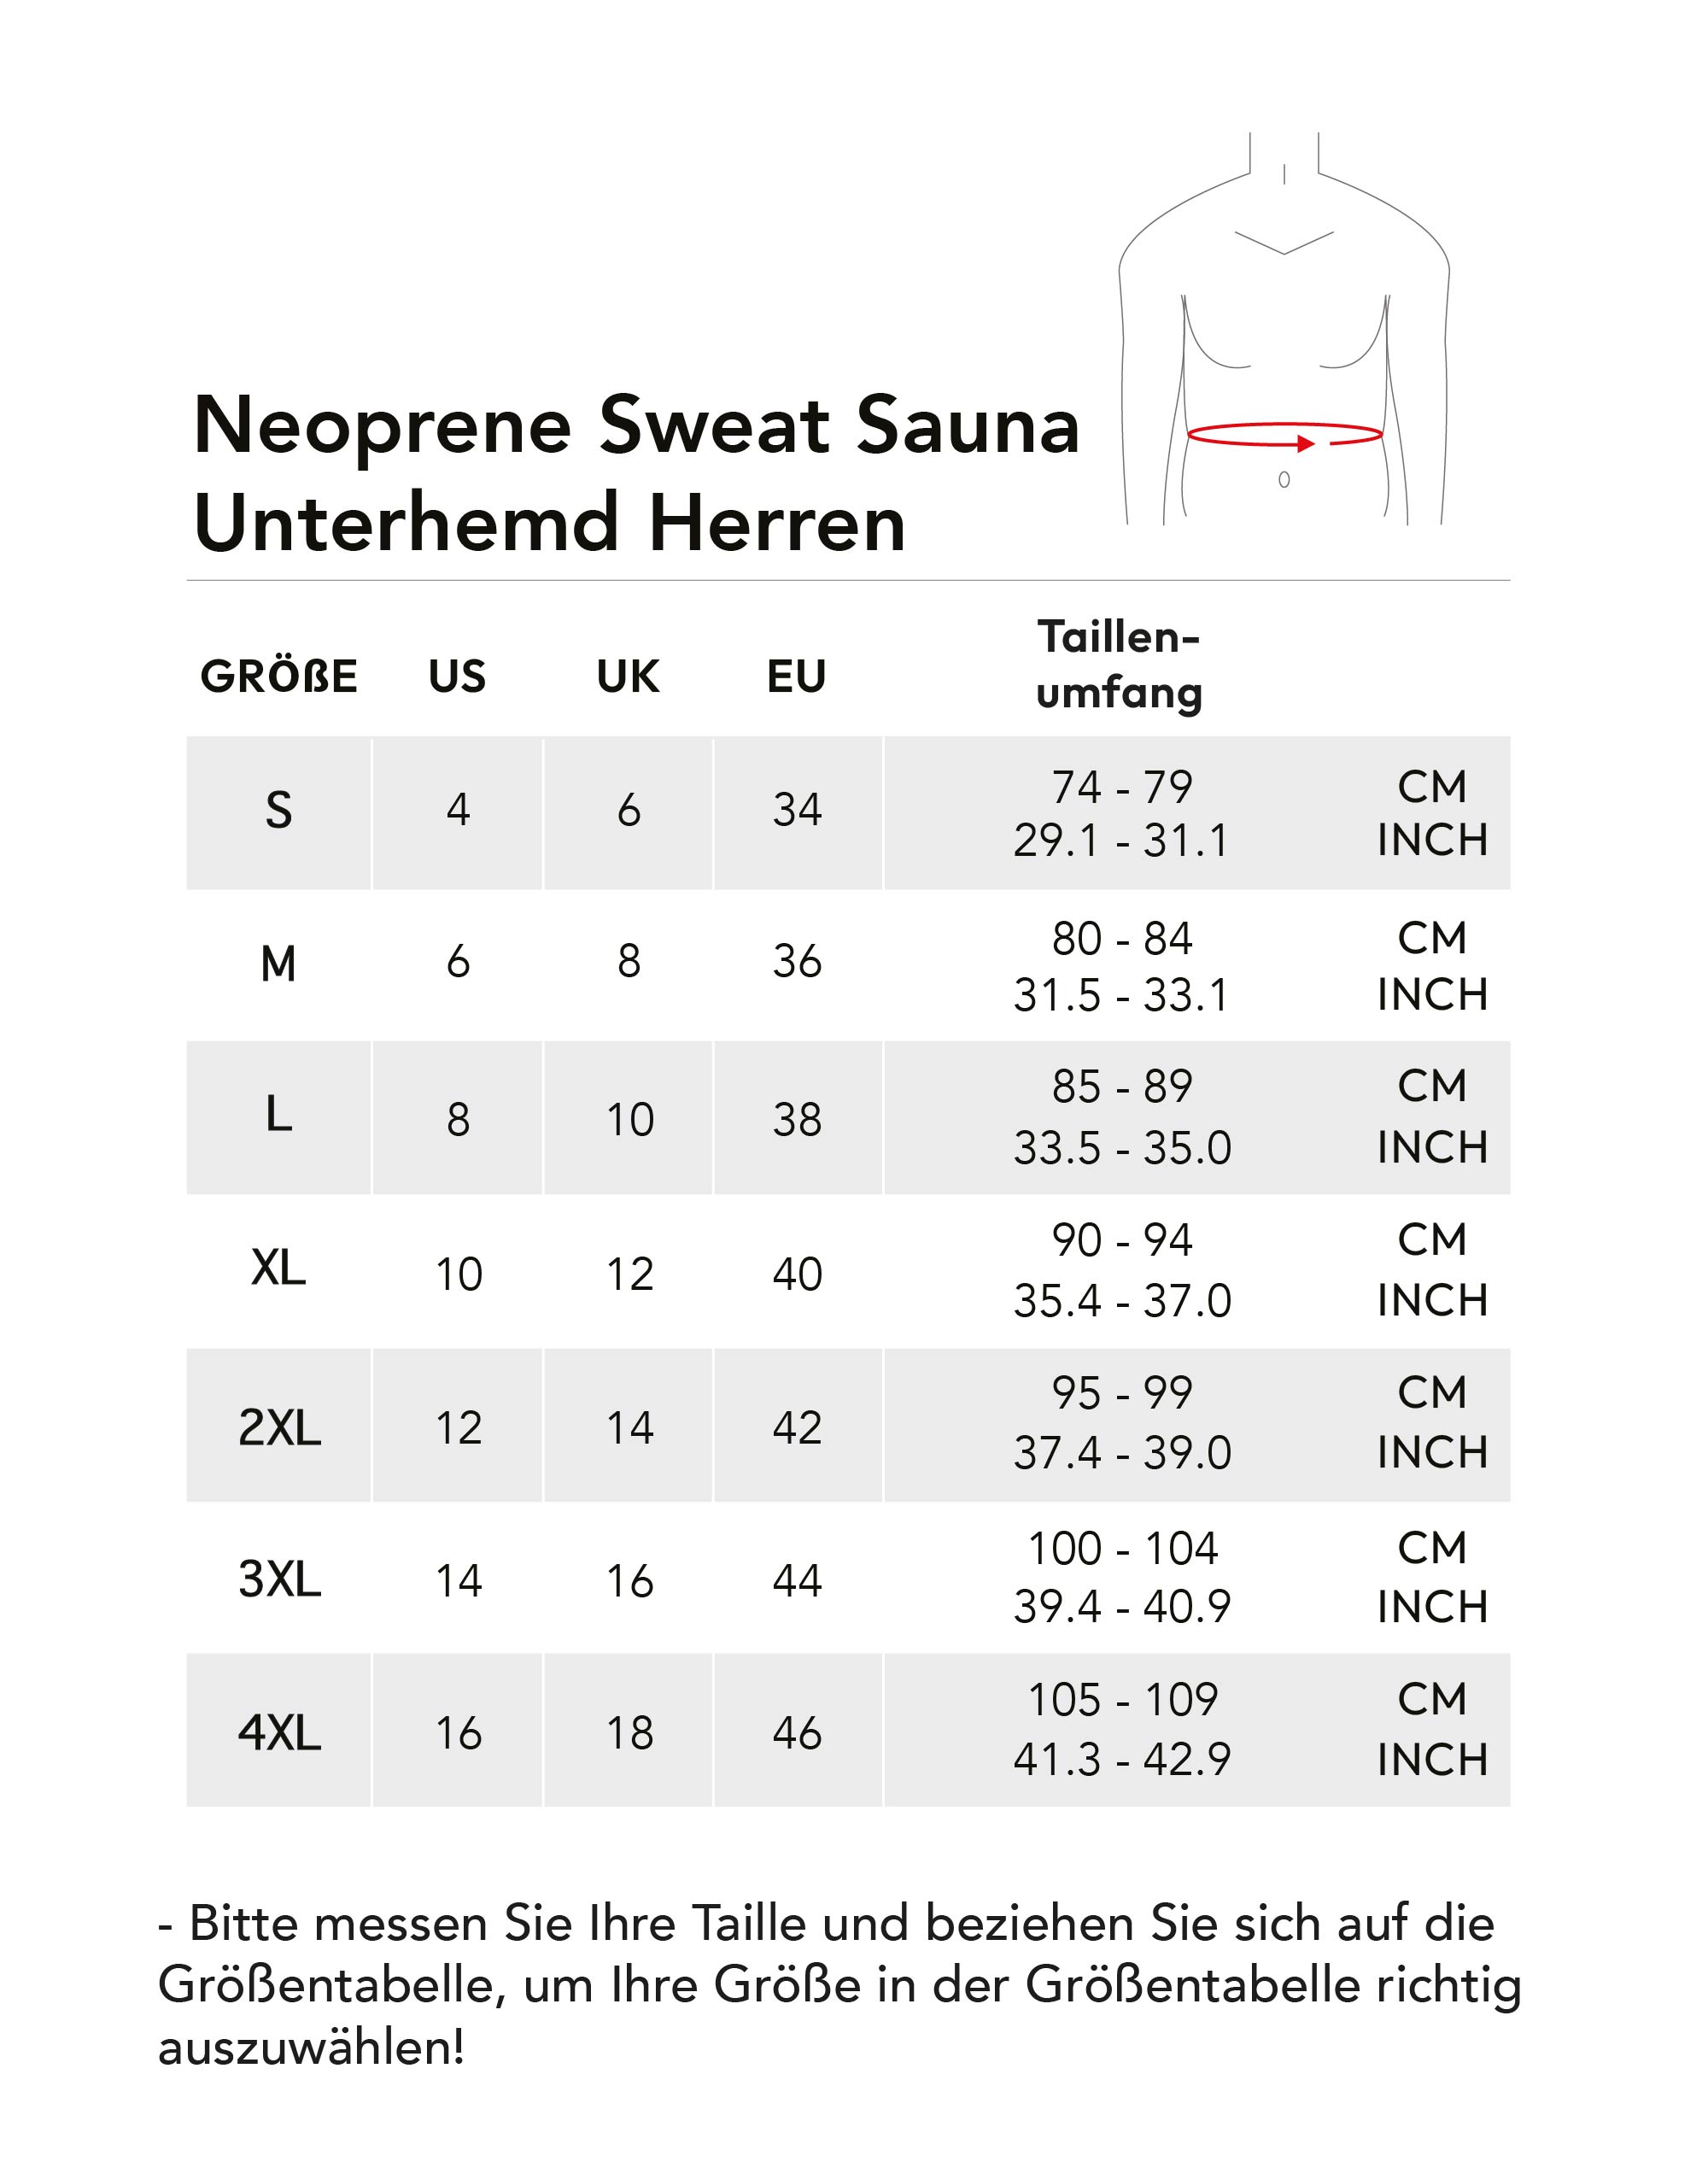 neoprene-sweat-sauna-unterhemd-herren.jpg (251 KB)